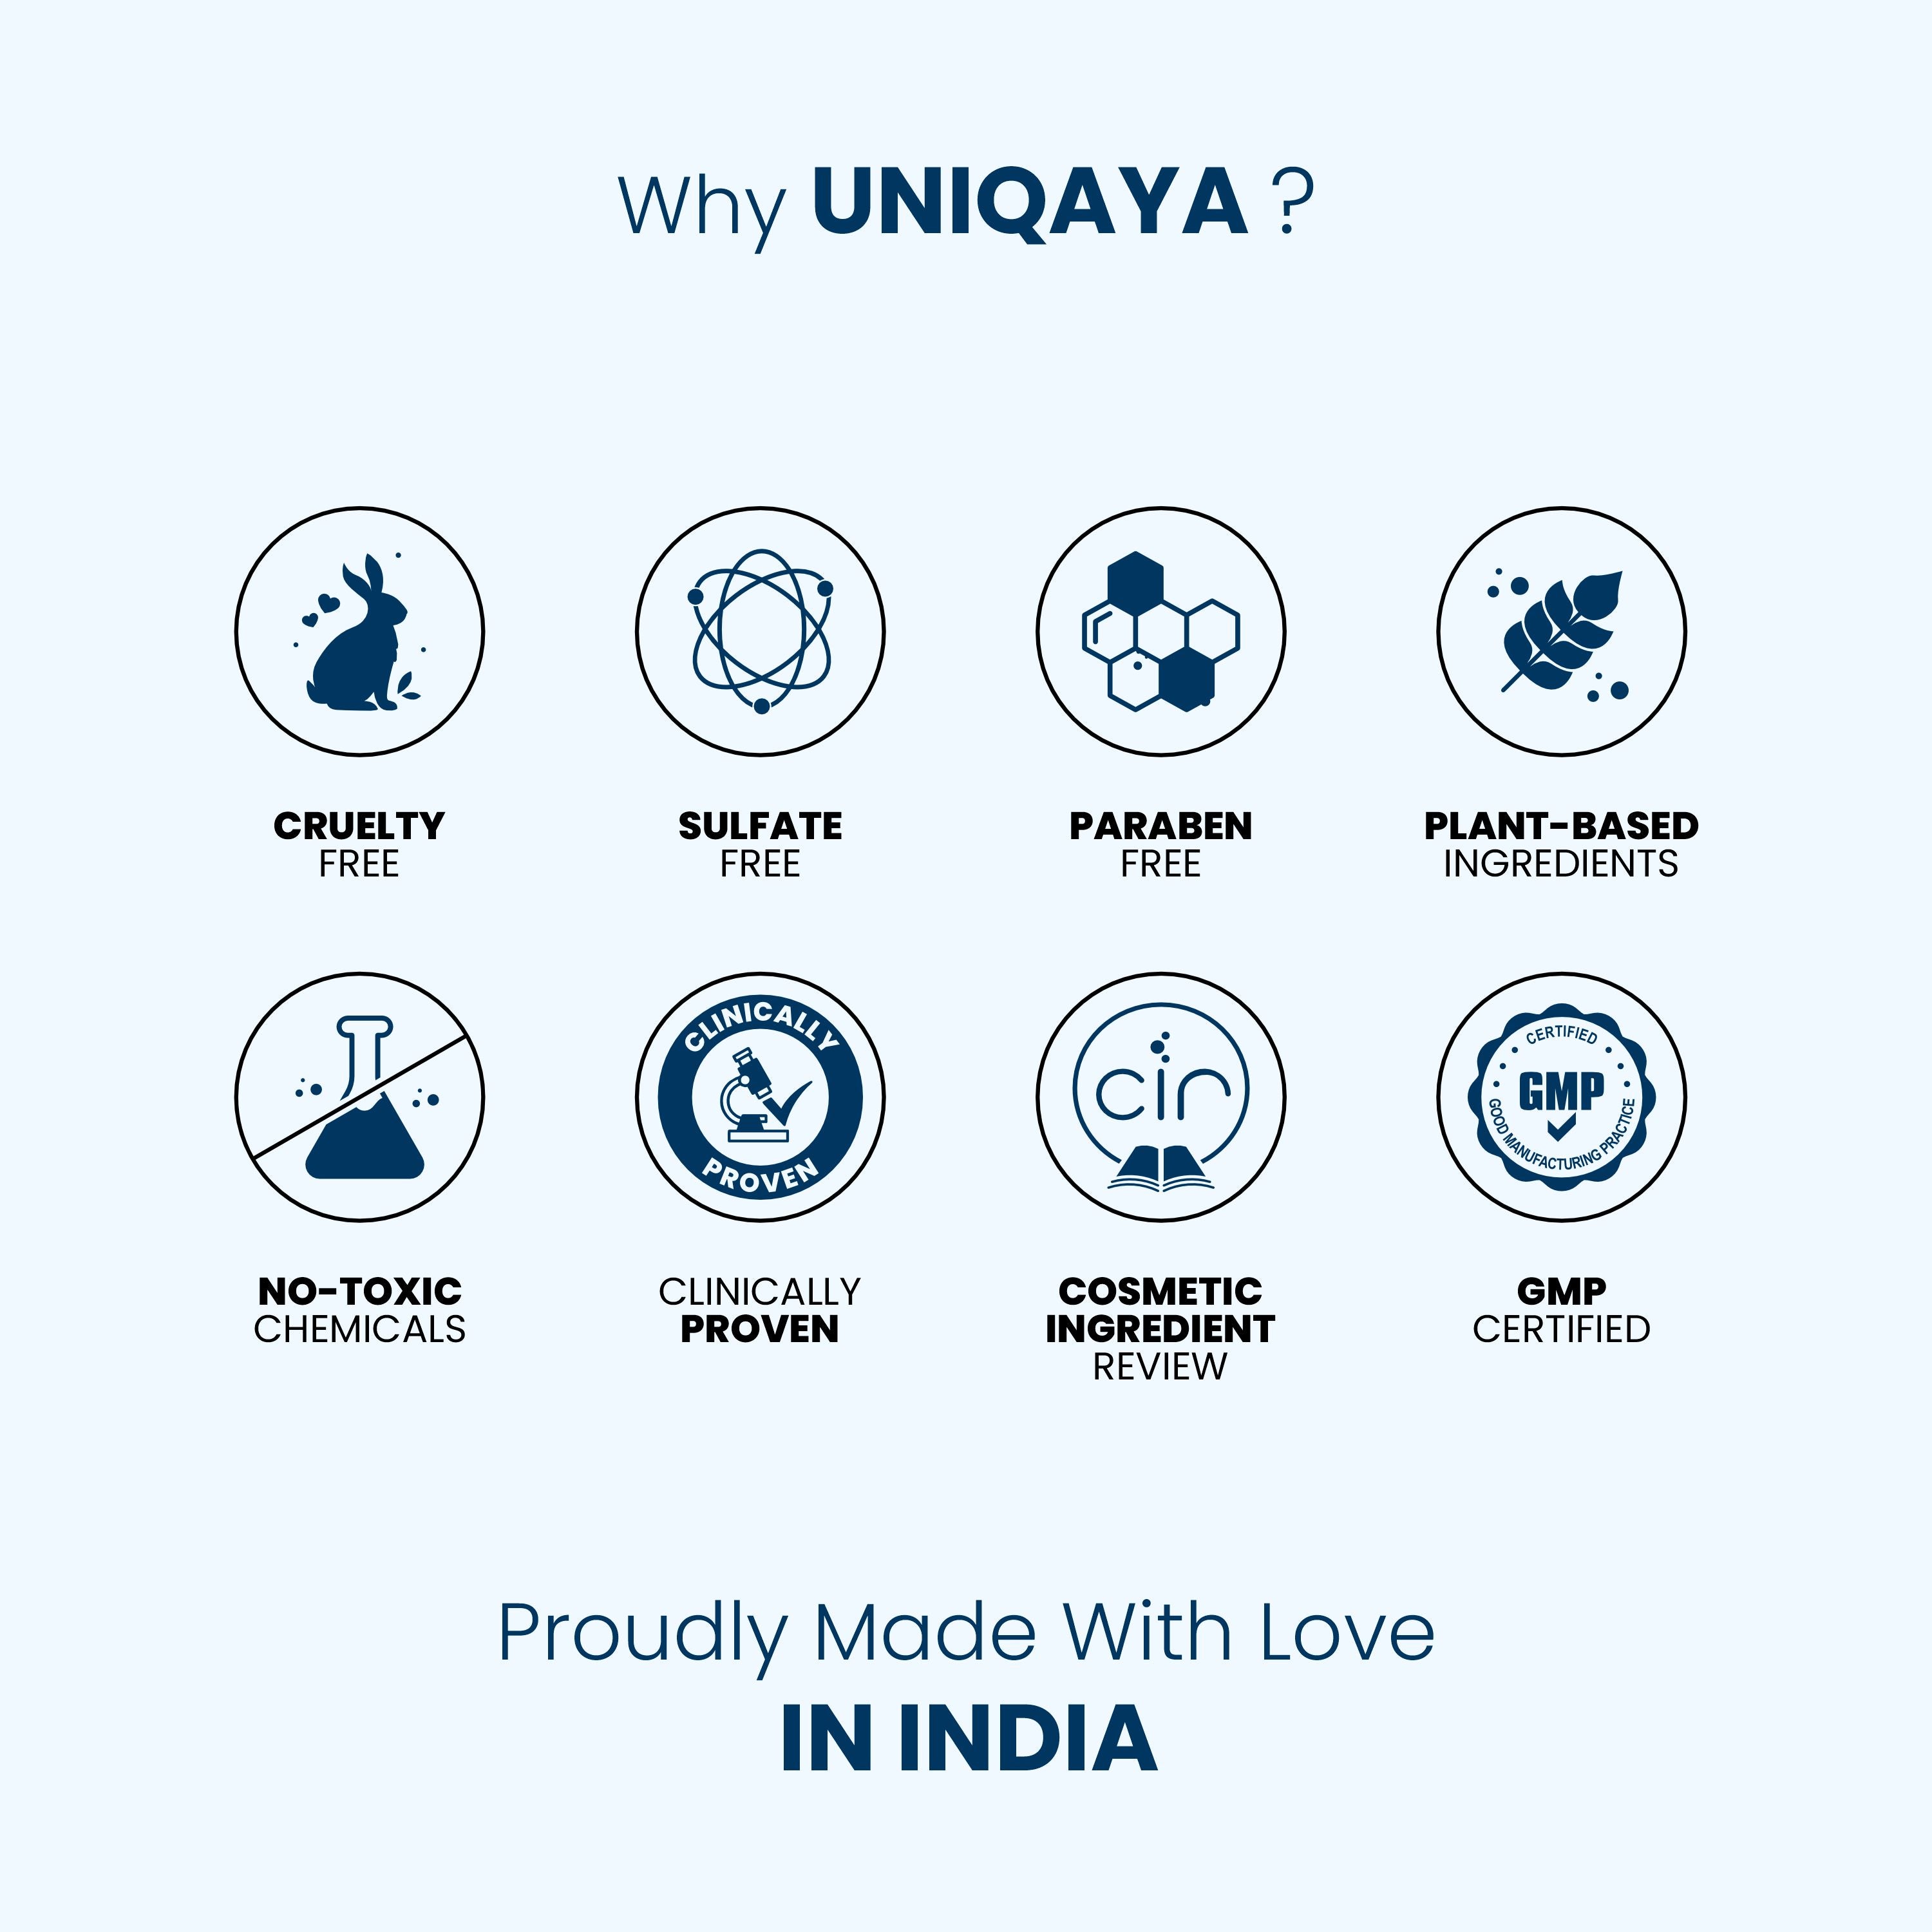 Why UNIQAYA?